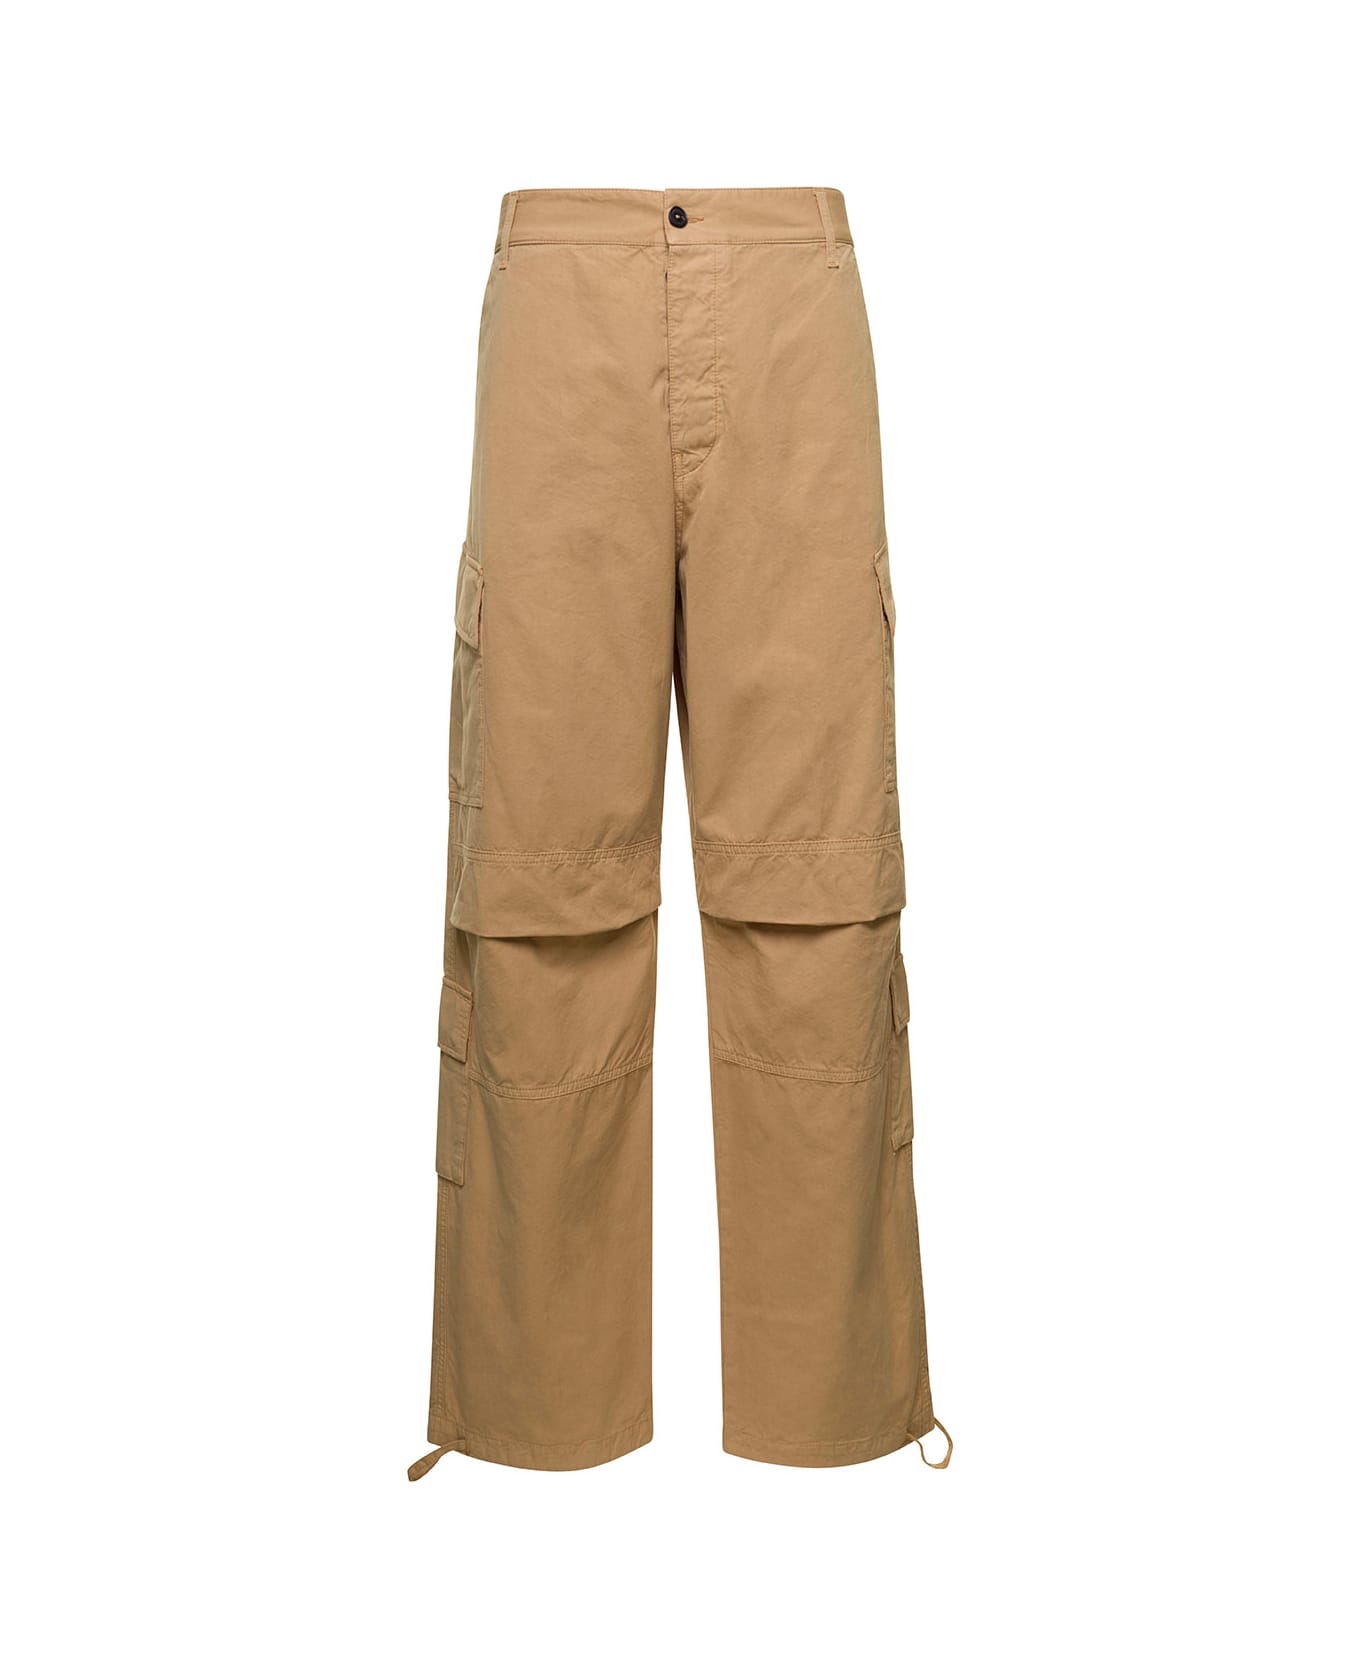 DARKPARK 'saint' Beige Cargo Pants With Pockets In Cotton Man - Beige ボトムス